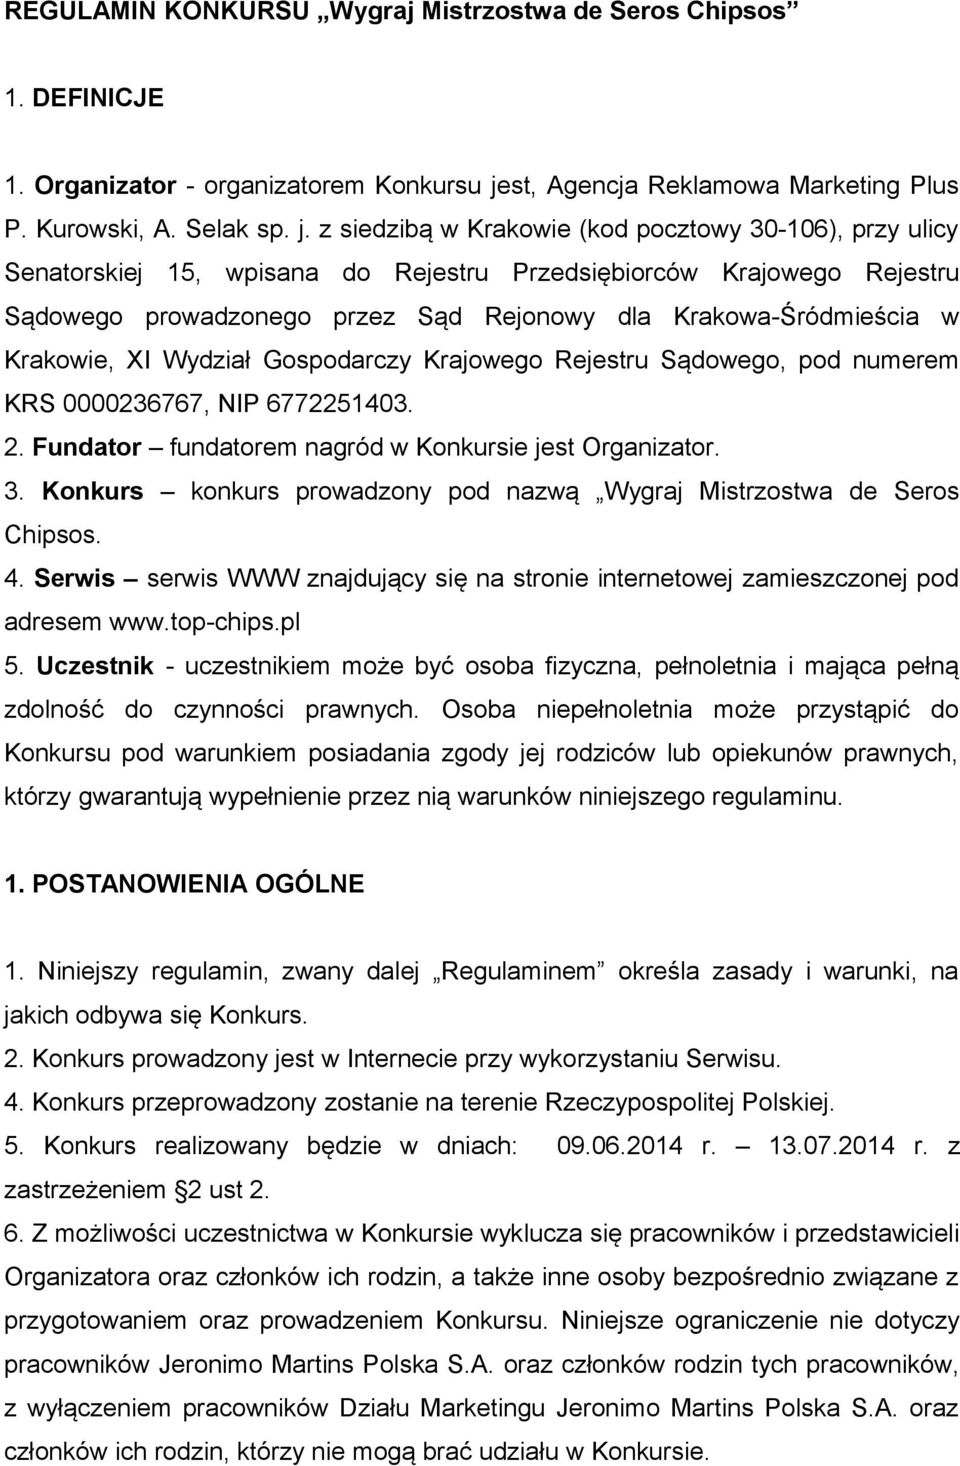 z siedzibą w Krakowie (kod pocztowy 30-106), przy ulicy Senatorskiej 15, wpisana do Rejestru Przedsiębiorców Krajowego Rejestru Sądowego prowadzonego przez Sąd Rejonowy dla Krakowa-Śródmieścia w